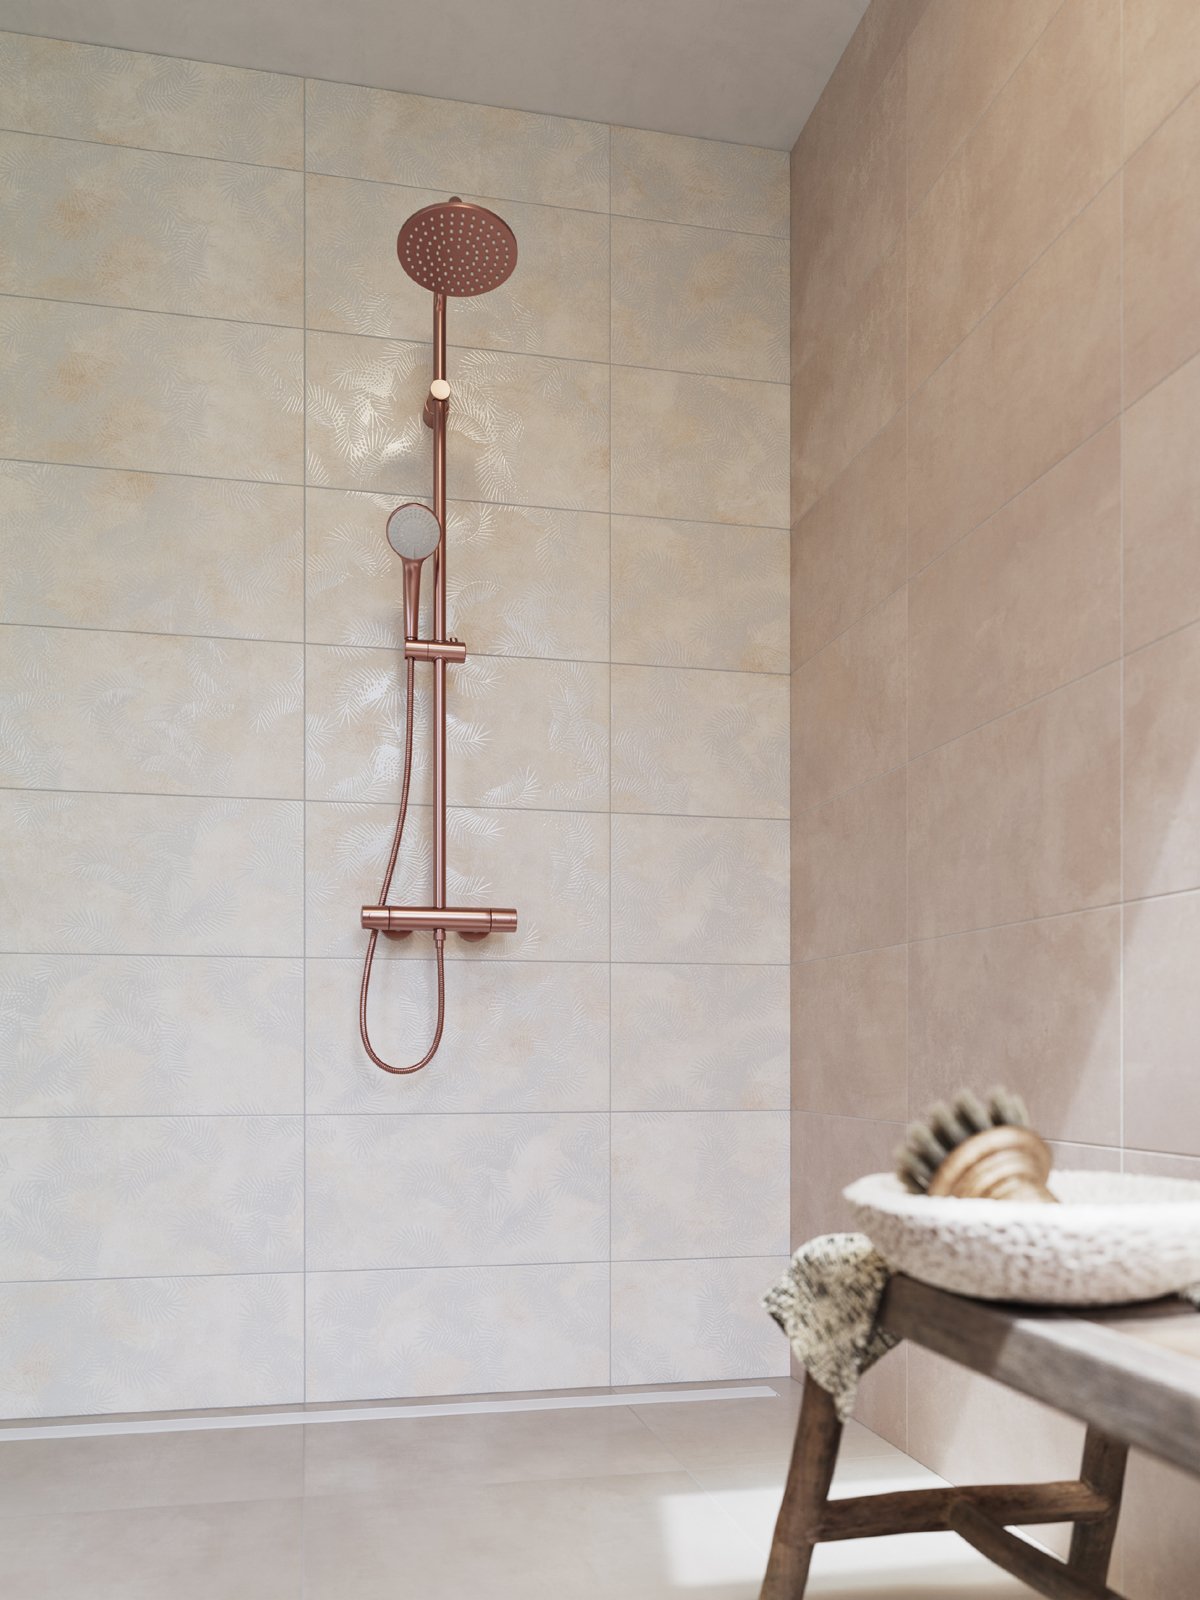 #RAKO #Lampea #Obklady a dlažby #Koupelna #beton #Moderní styl #béžová #Matný obklad #Velký formát #350 - 500 Kč/m2 #500 - 700 Kč/m2 #new 